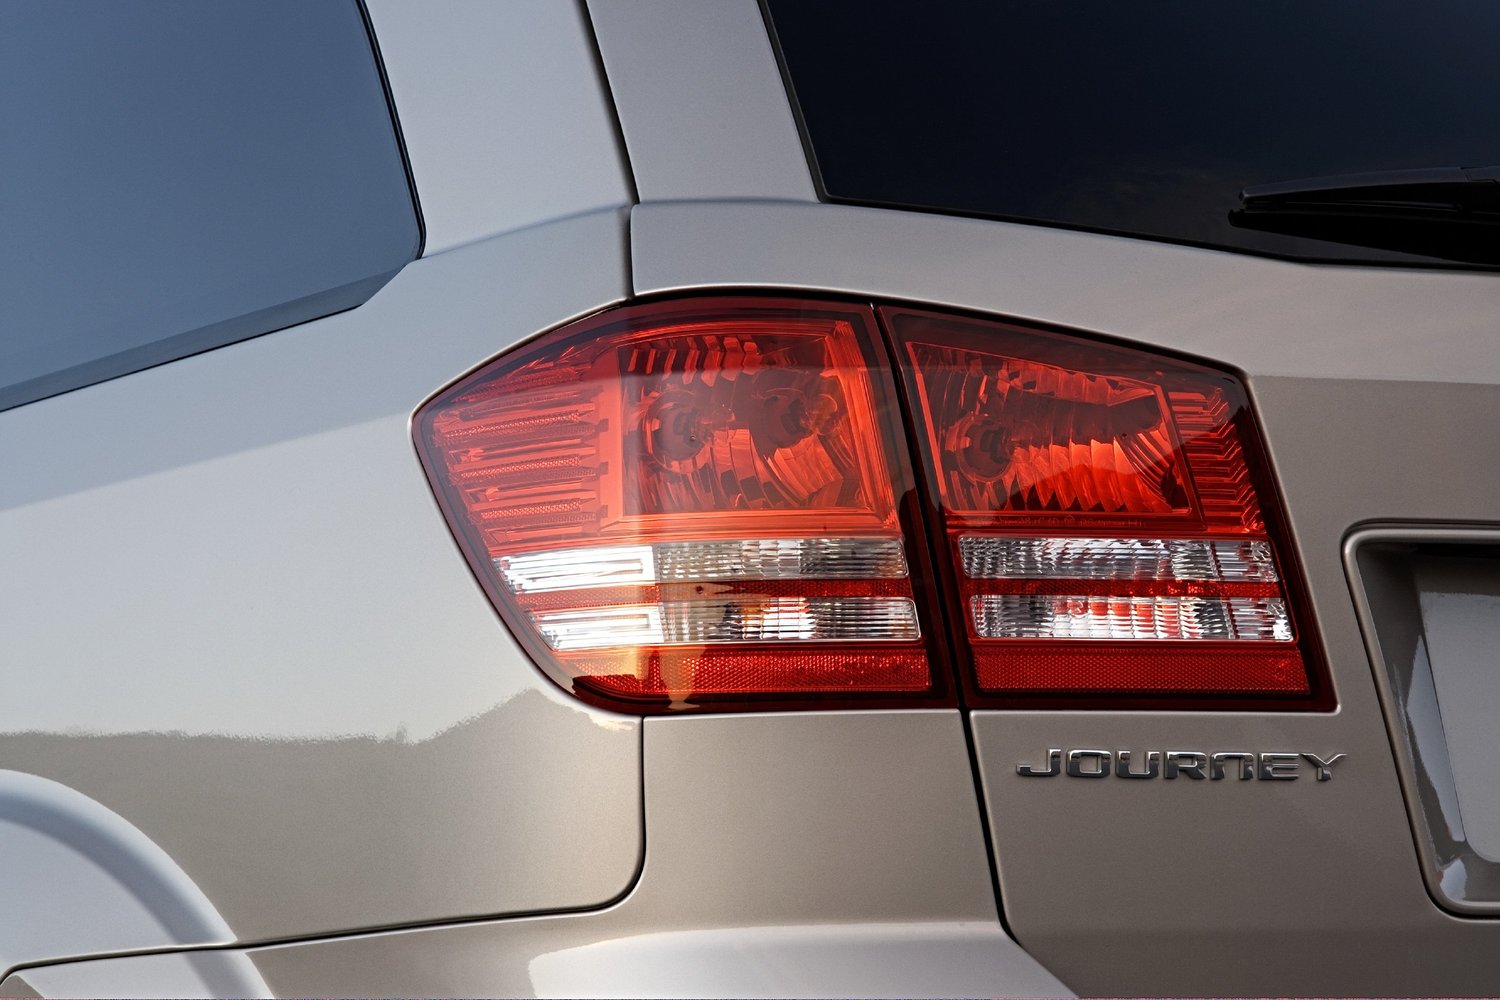 кроссовер Dodge Journey 2008 - 2016г выпуска модификация 2.7 AT (185 л.с.)